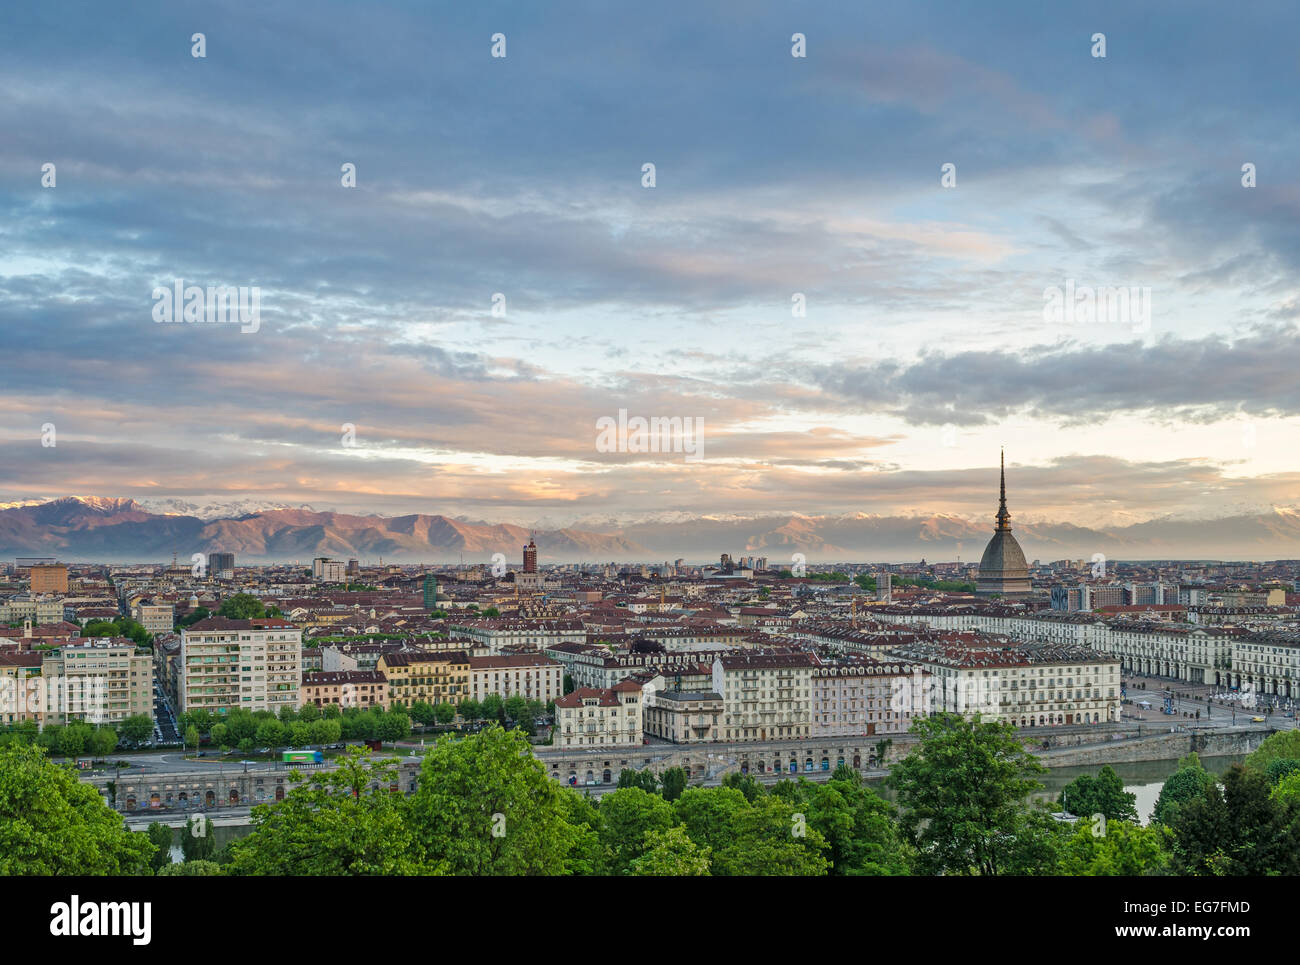 Turin (Torino), panorama at sunrise Stock Photo